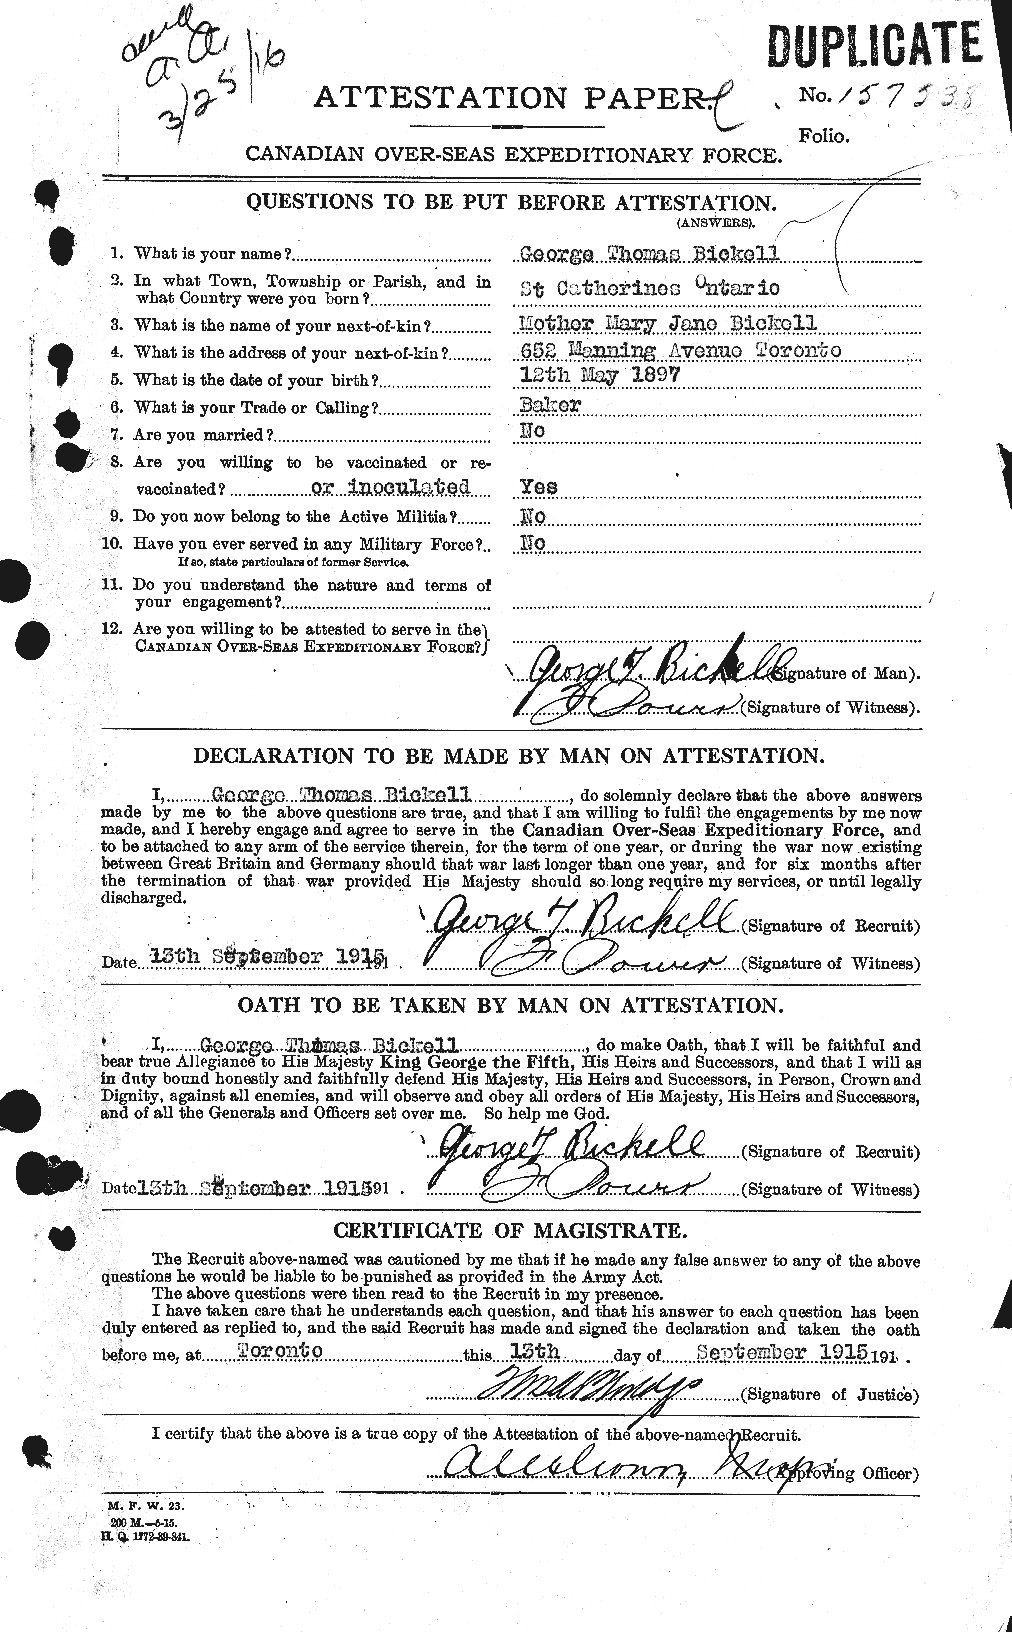 Dossiers du Personnel de la Première Guerre mondiale - CEC 244971a